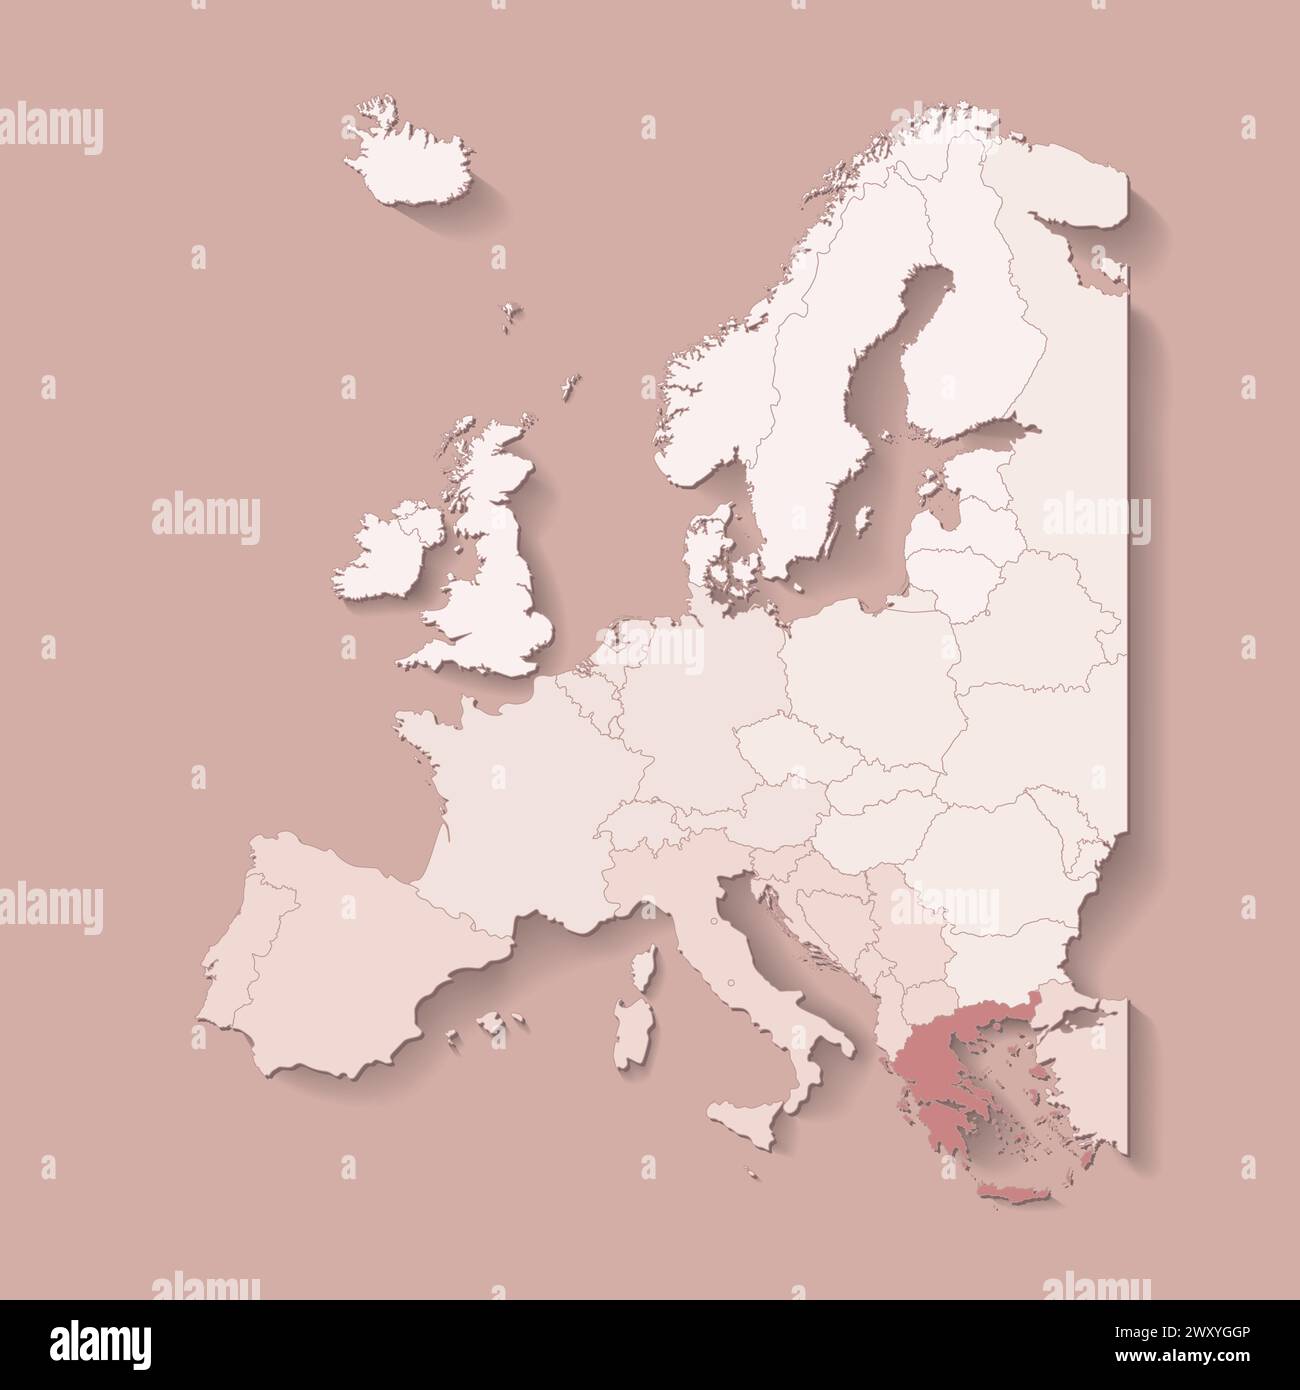 Illustrazione vettoriale con terra europea con confini di stati e paese marcato Grecia. Mappa politica in colori marroni con occidentale, sud e così via Illustrazione Vettoriale